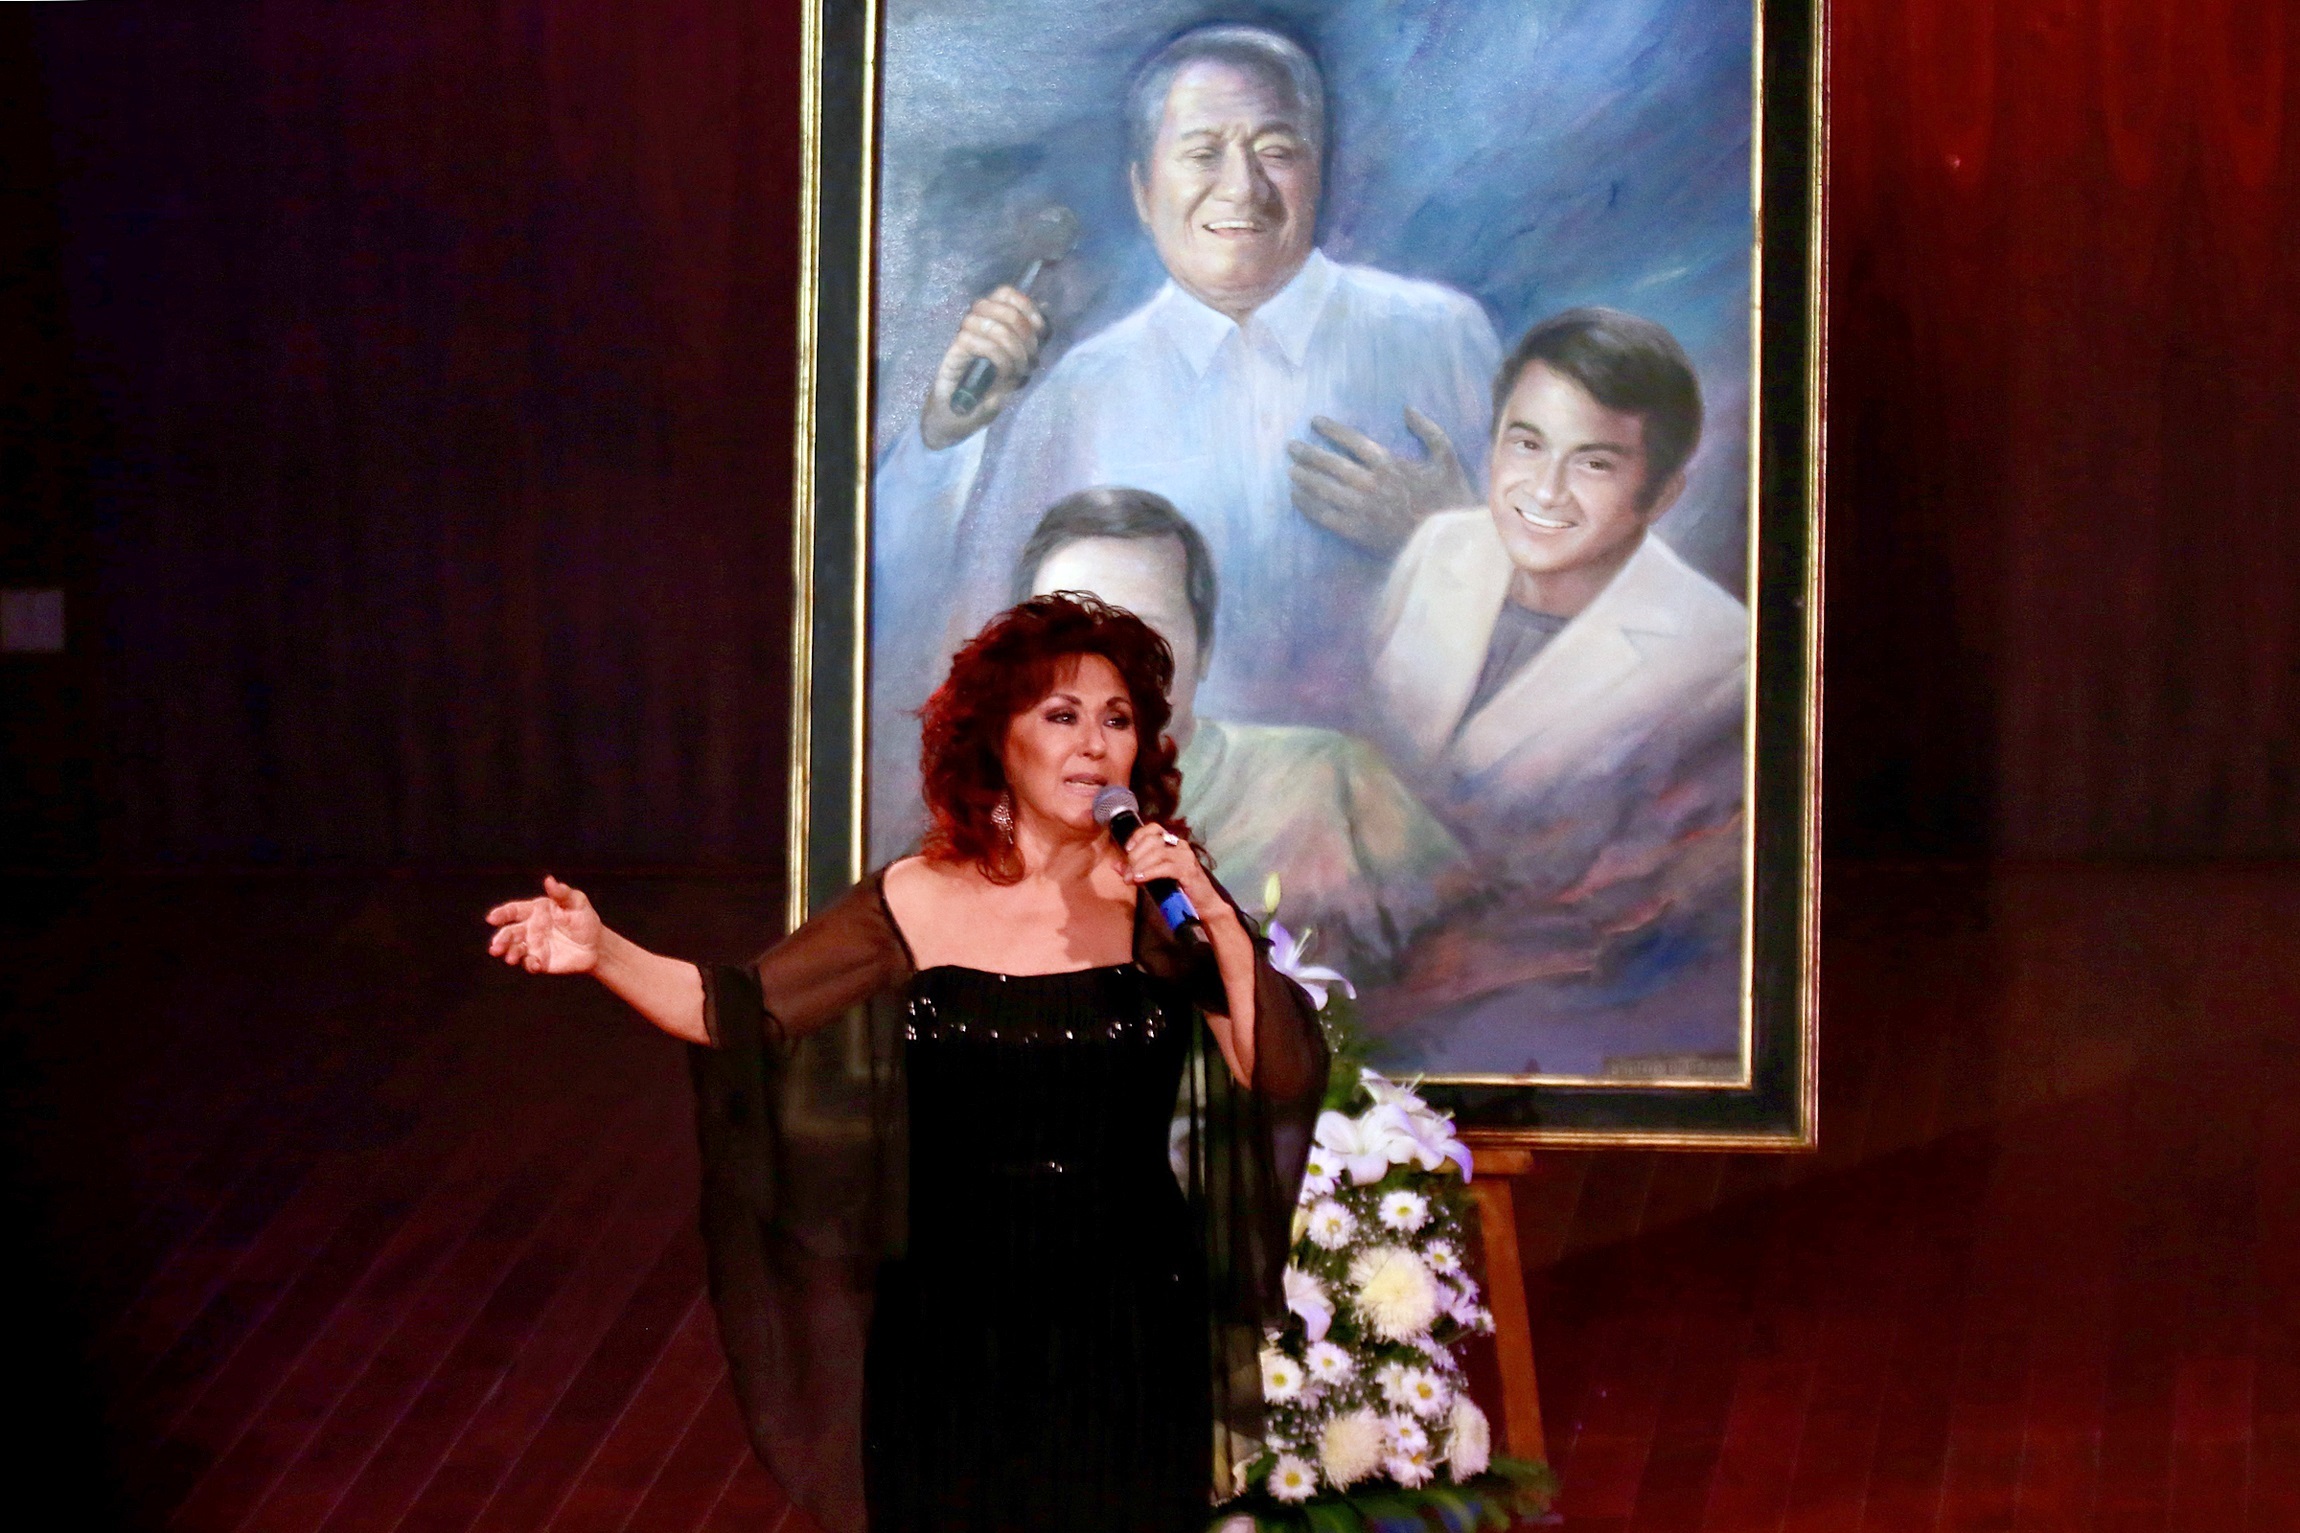 La embajadora de la canción yucateca en Latinoamerica, Maricarmen Pérez, participa en un homenaje al cantautor mexicano Armando Manzanero tras un año de su fallecimiento, hoy, en el Palacio de la Música, en Mérida (Foto: EFE)